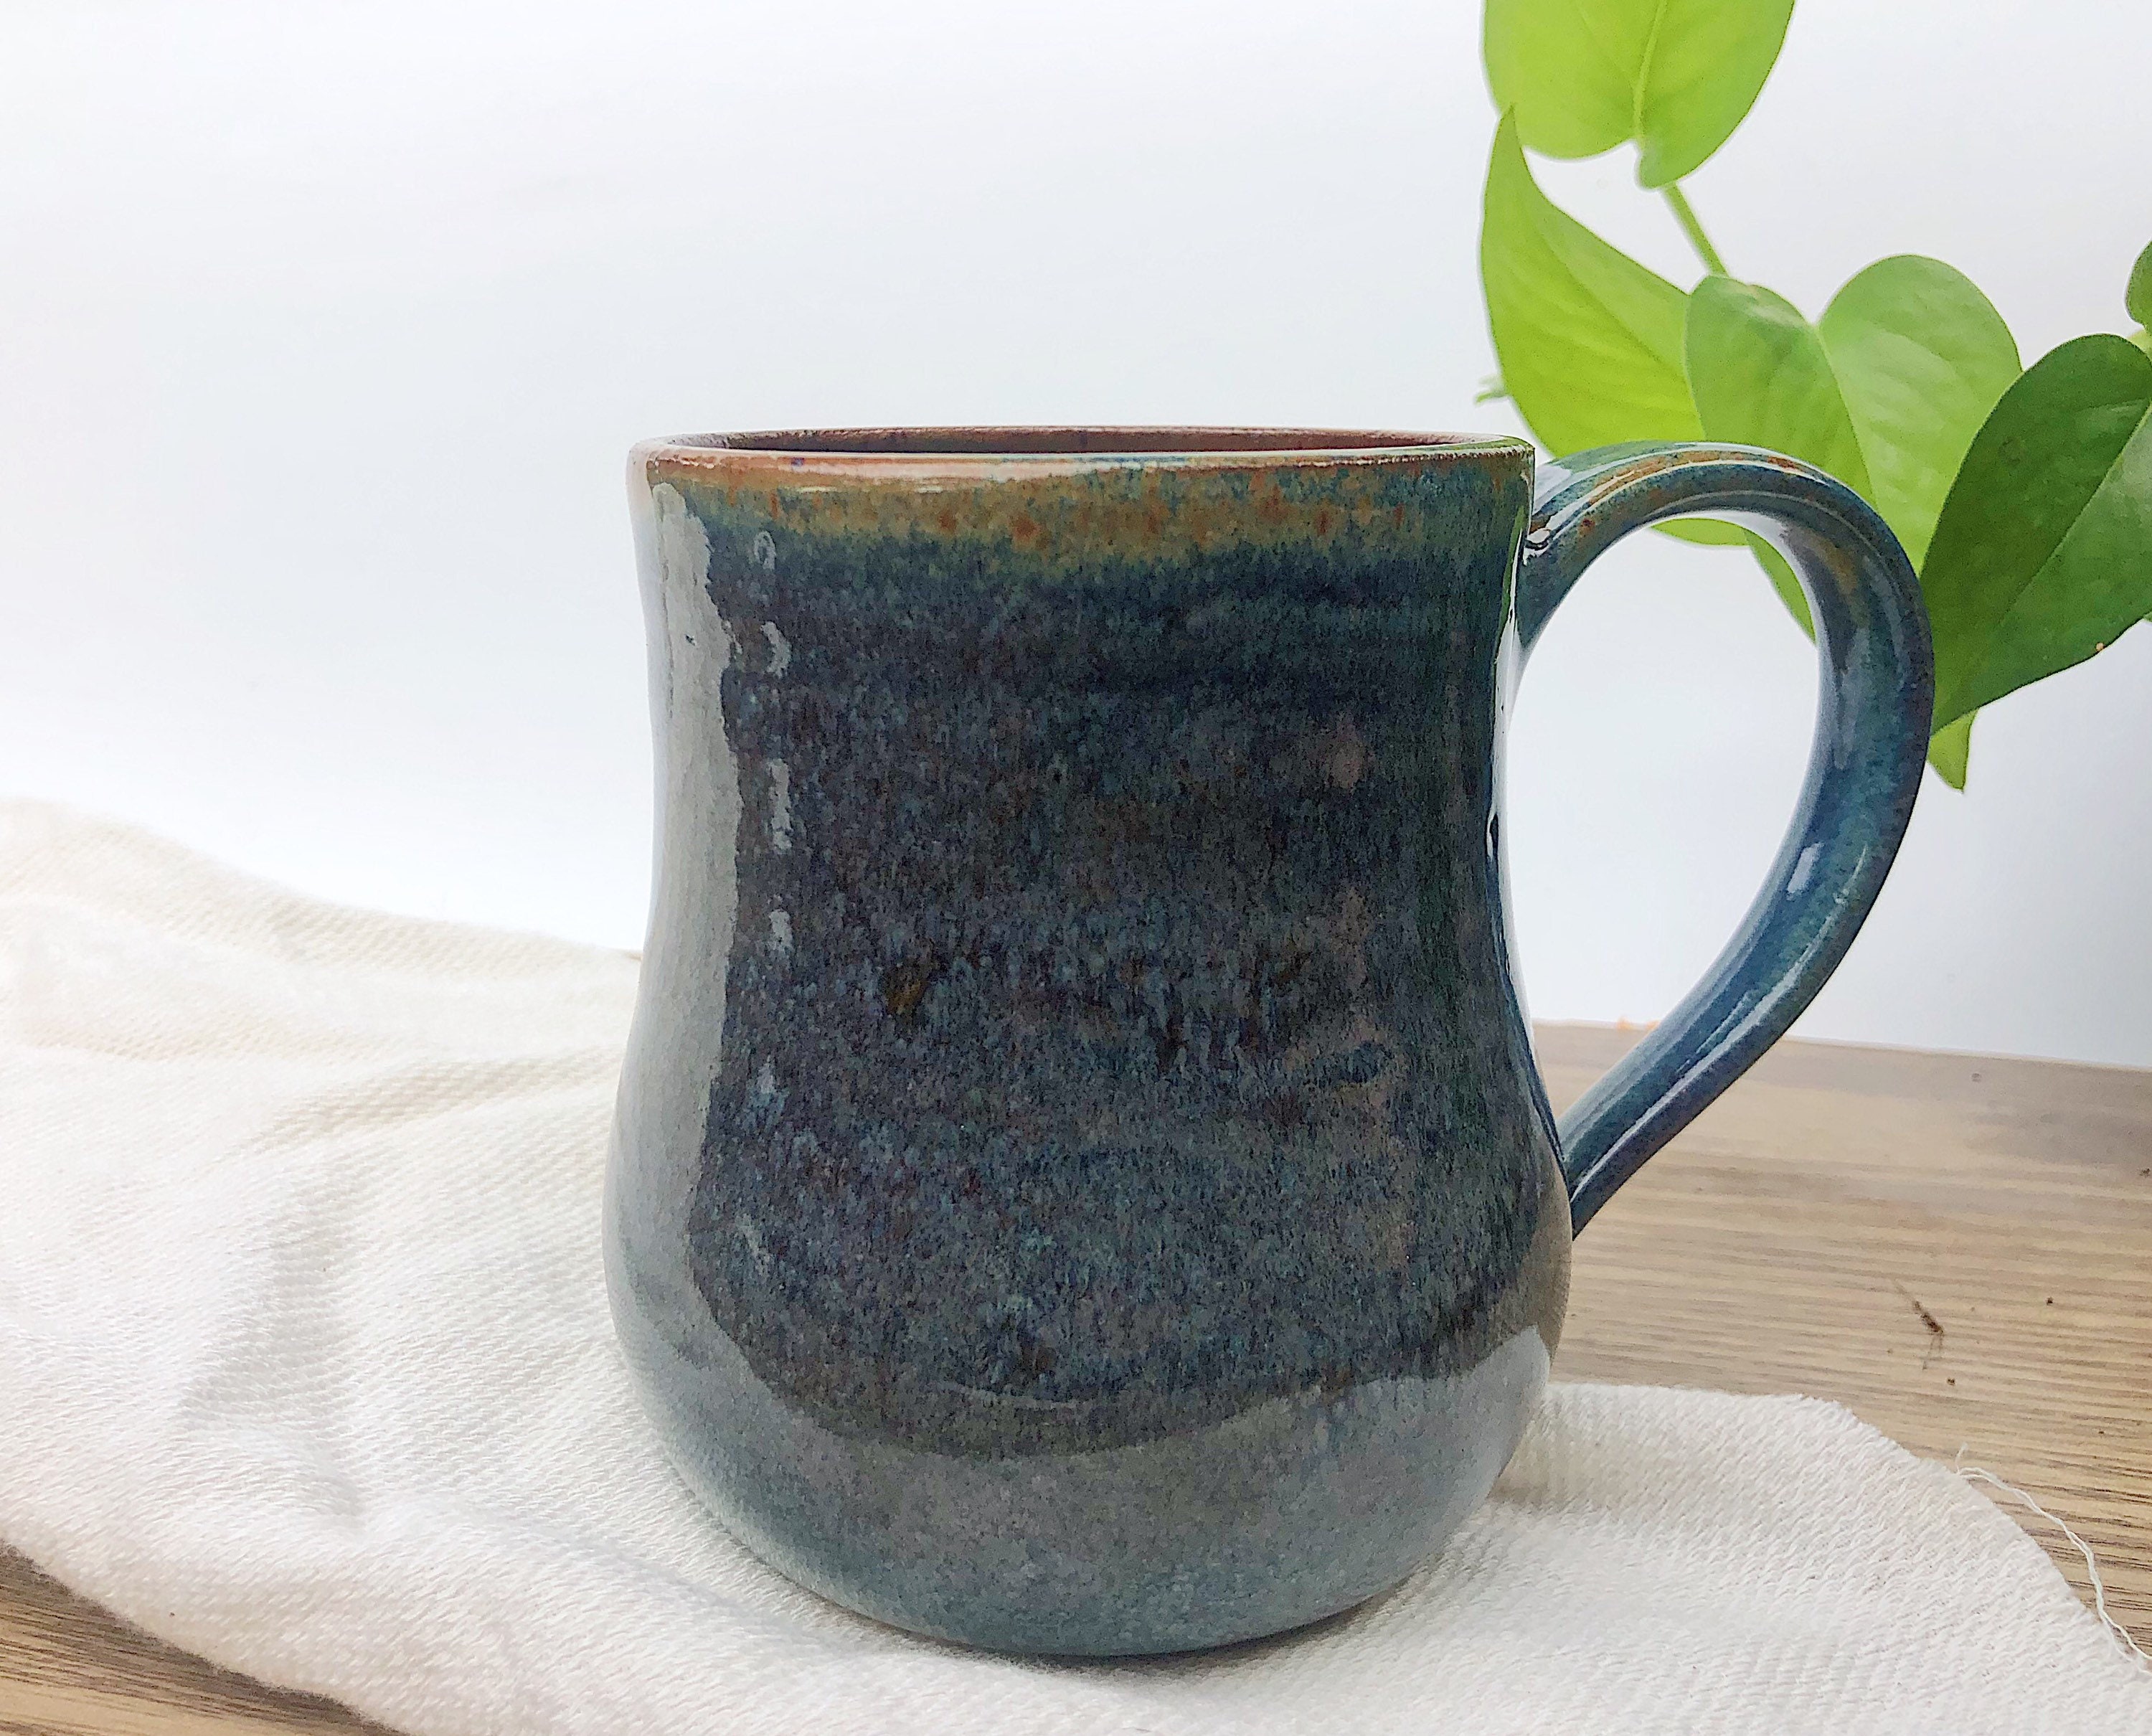 Extra Large Handmade Ceramic Mug Handmade Pottery Mug With Etsy